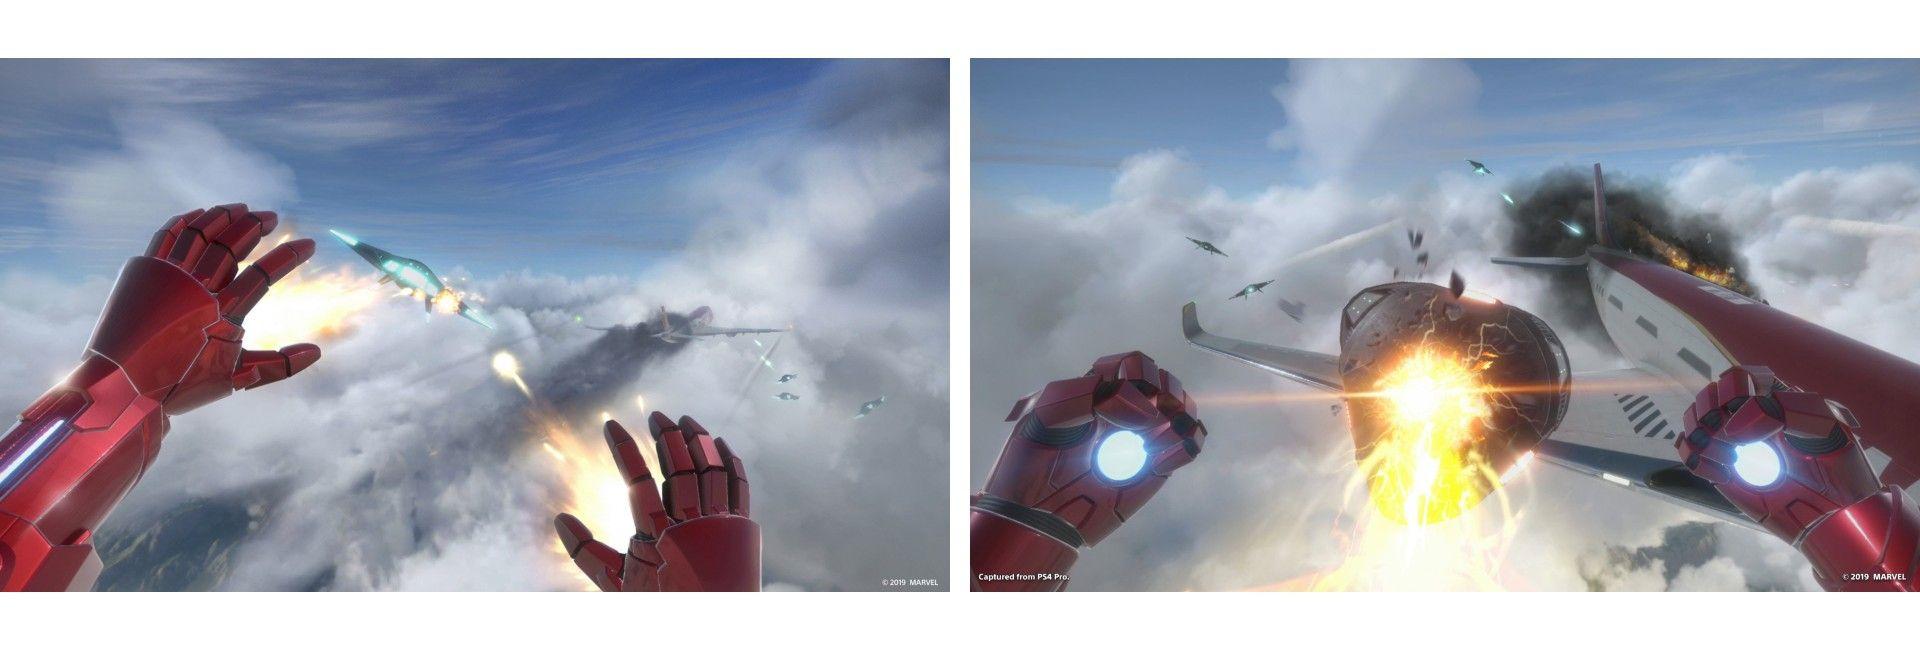 Marvel Iron Man VR-Bild 1 | Rakuten